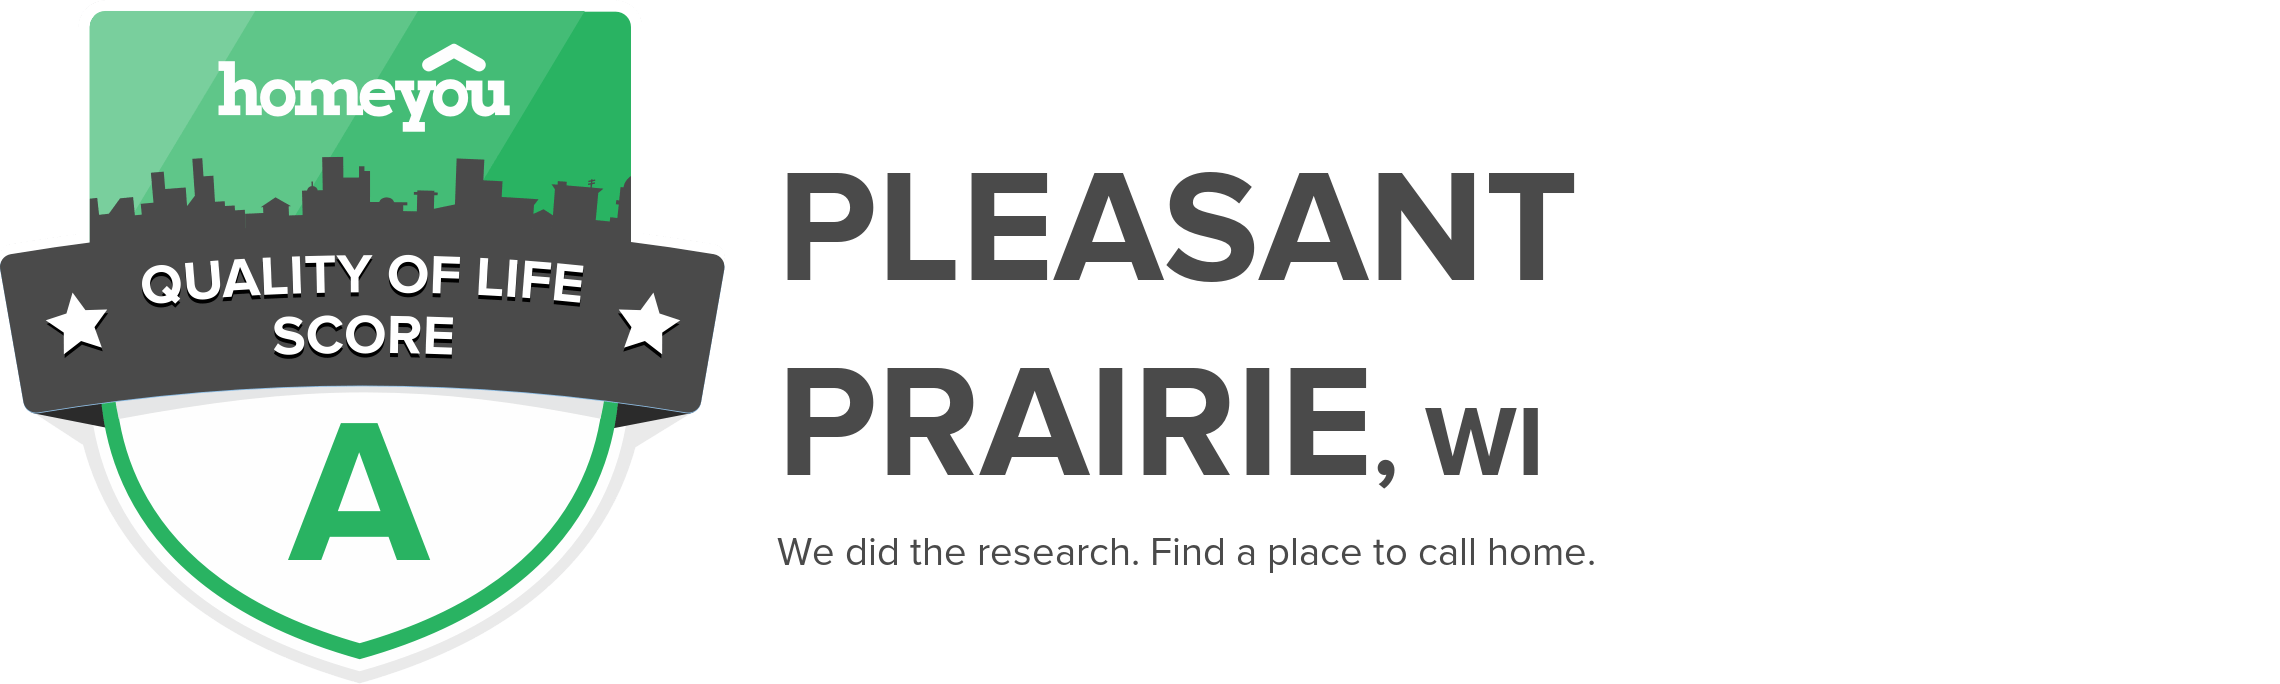 Pleasant Prairie, WI